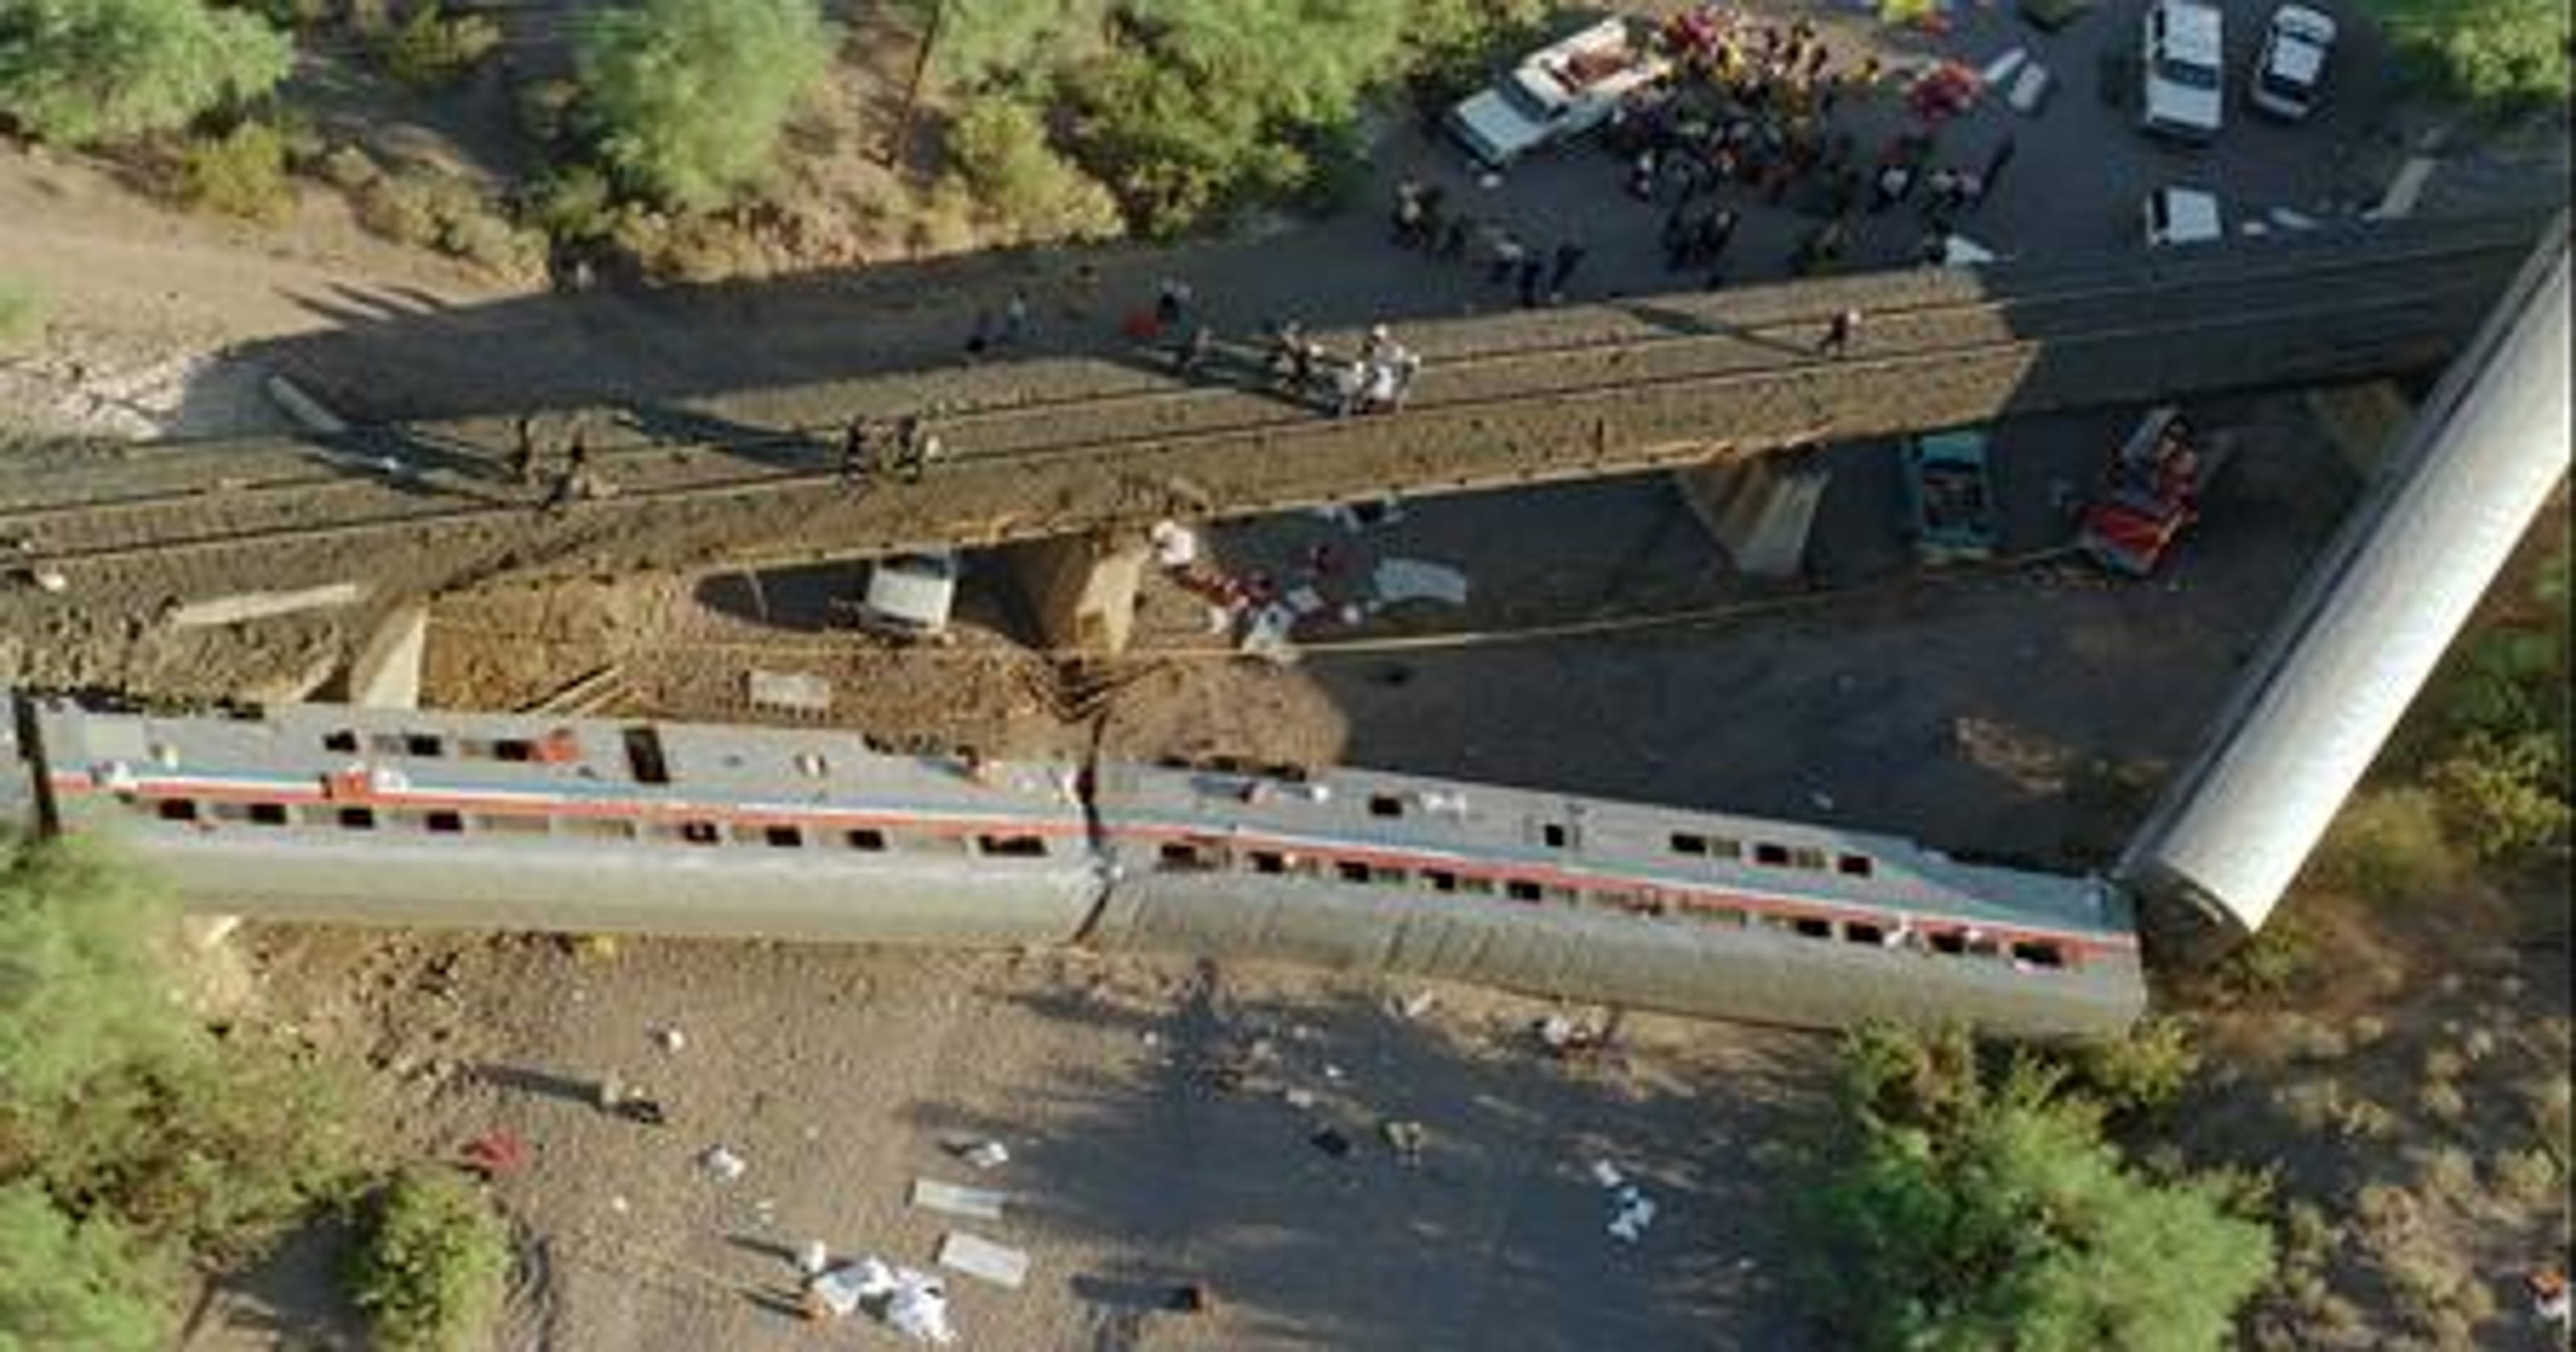 FBI offers 300K reward 20 years after Arizona train derails